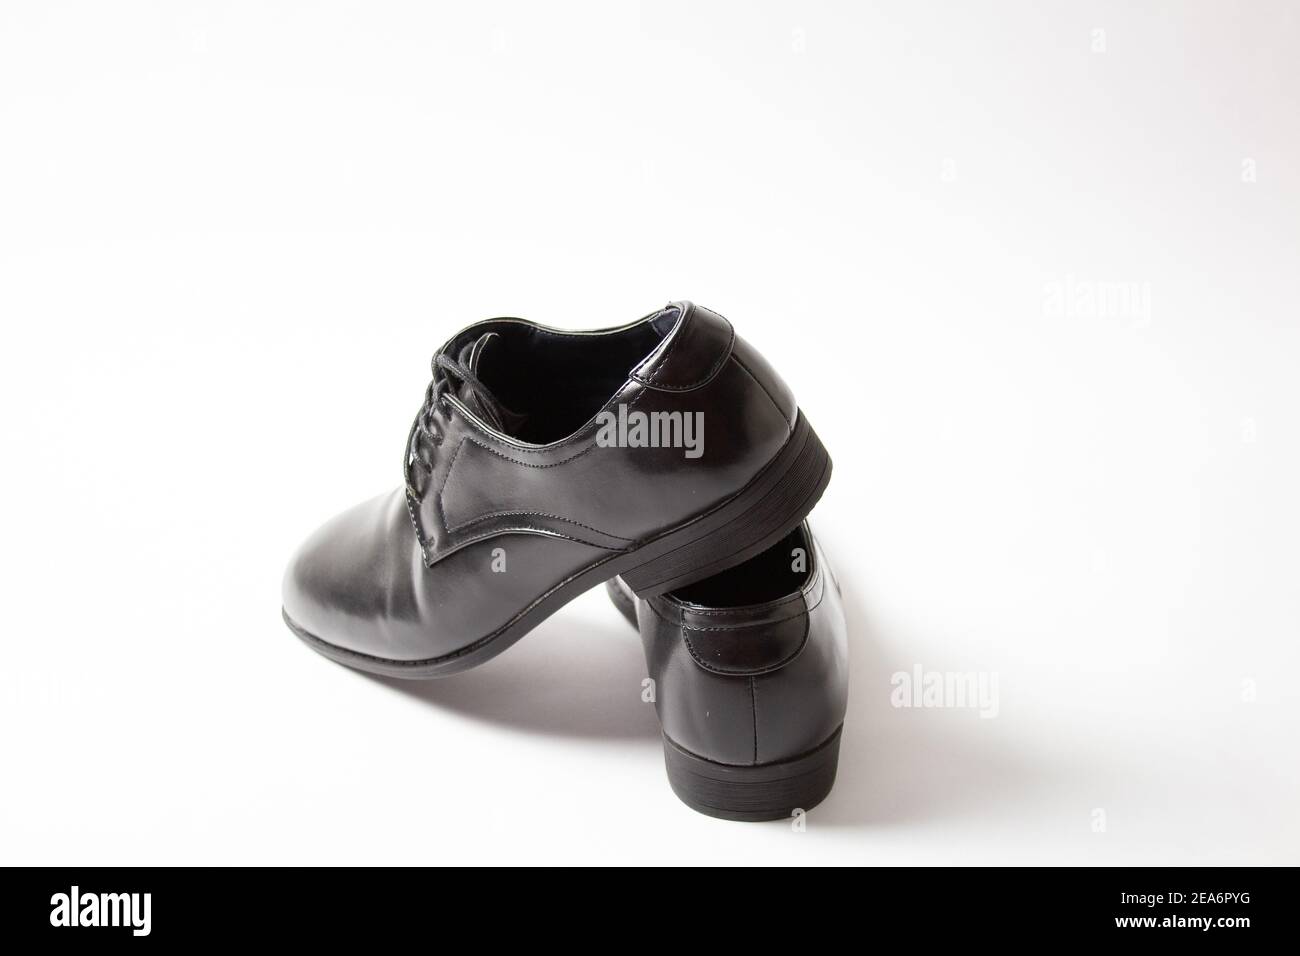 Men's dress shoes black color Stock Photo - Alamy